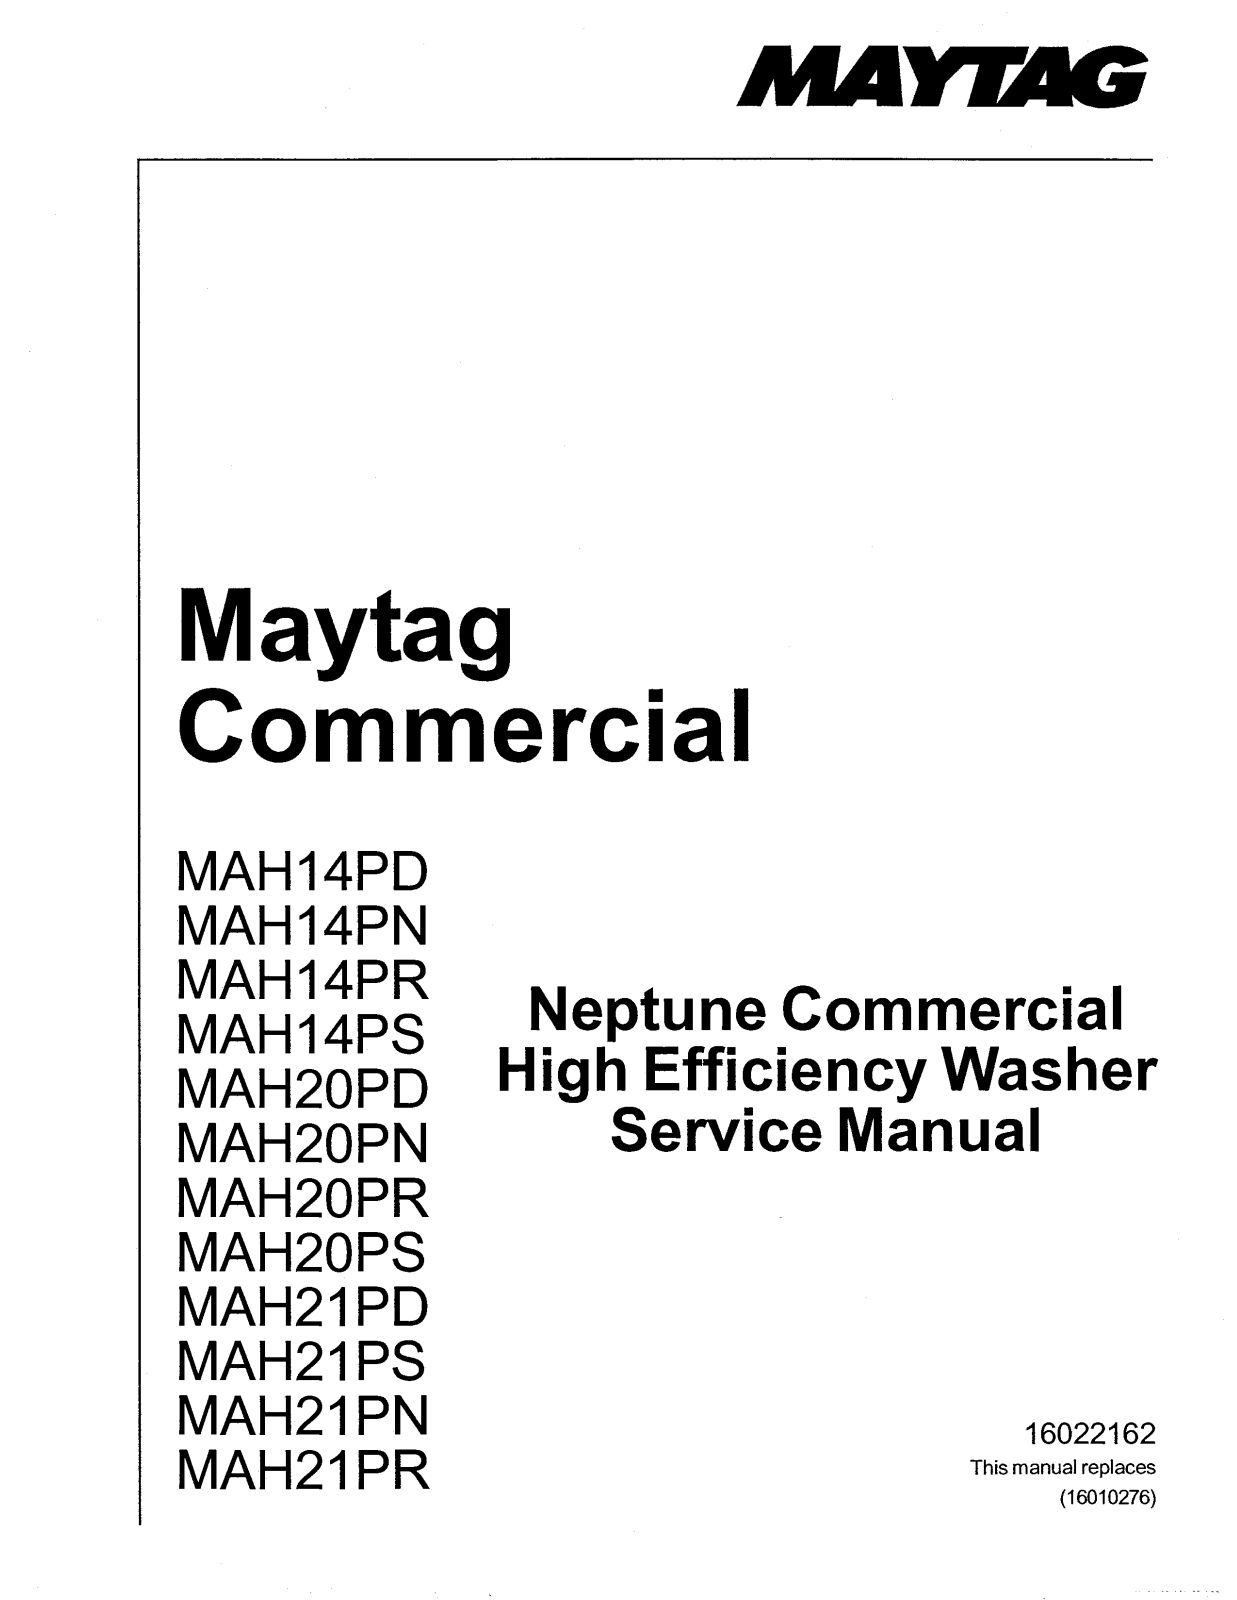 Maytag MAH21PR, MAH21PN, MAH21PS, MAH21PD, MAH20PS Service Manual